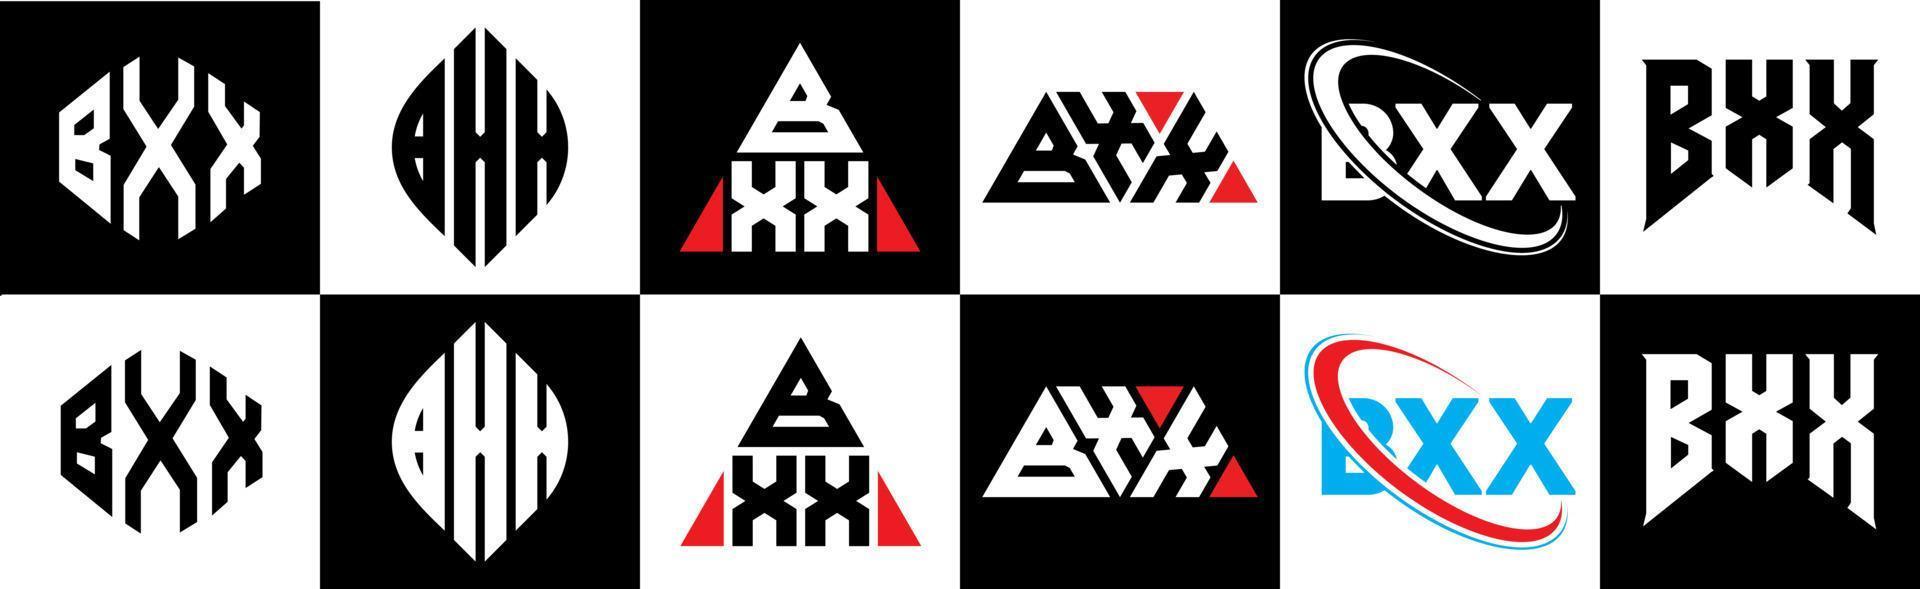 bxx-Buchstaben-Logo-Design in sechs Stilen. bxx Polygon, Kreis, Dreieck, Sechseck, flacher und einfacher Stil mit schwarz-weißem Buchstabenlogo in einer Zeichenfläche. bxx minimalistisches und klassisches Logo vektor